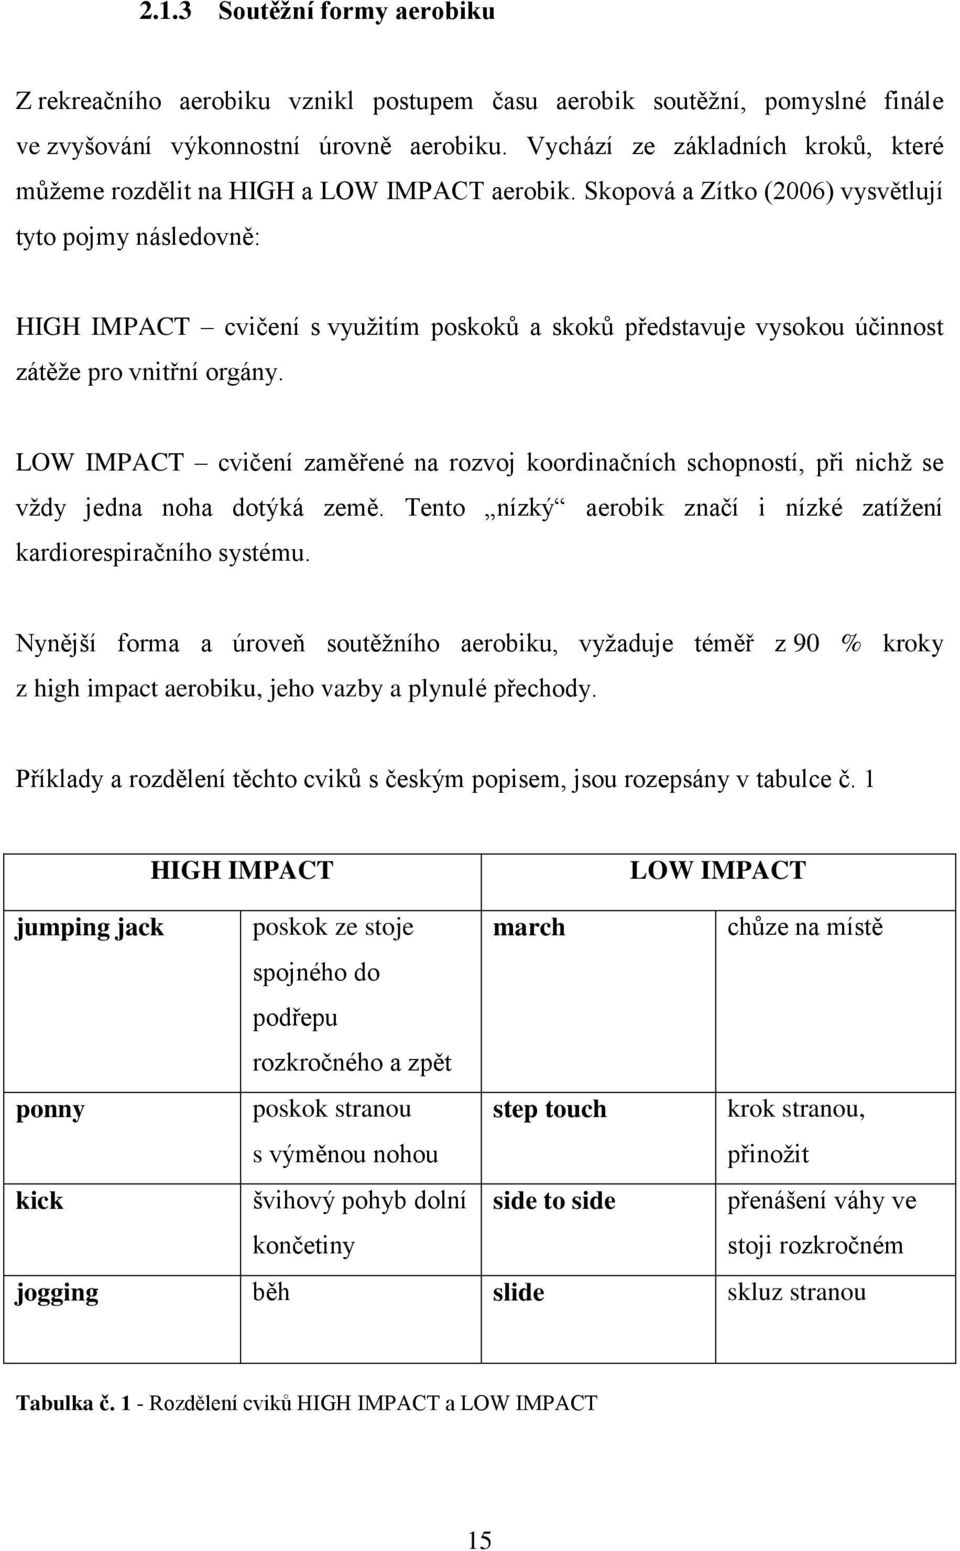 Skopová a Zítko (2006) vysvětlují tyto pojmy následovně: HIGH IMPACT cvičení s využitím poskoků a skoků představuje vysokou účinnost zátěže pro vnitřní orgány.